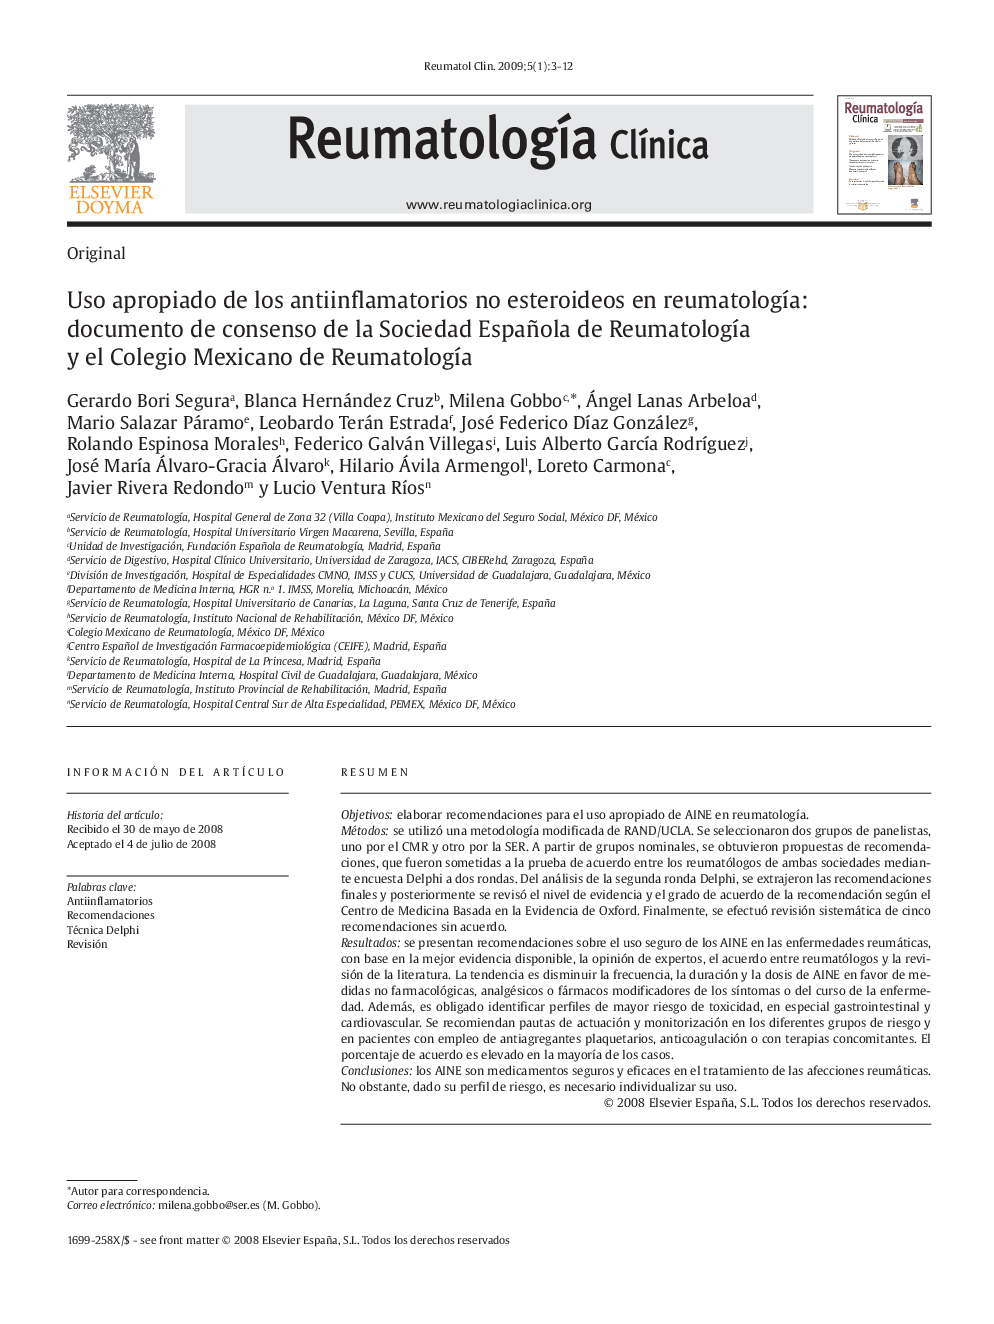 Uso apropiado de los antiinflamatorios no esteroideos en reumatologÃ­a: documento de consenso de la Sociedad Española de ReumatologÃ­a y el Colegio Mexicano de ReumatologÃ­a